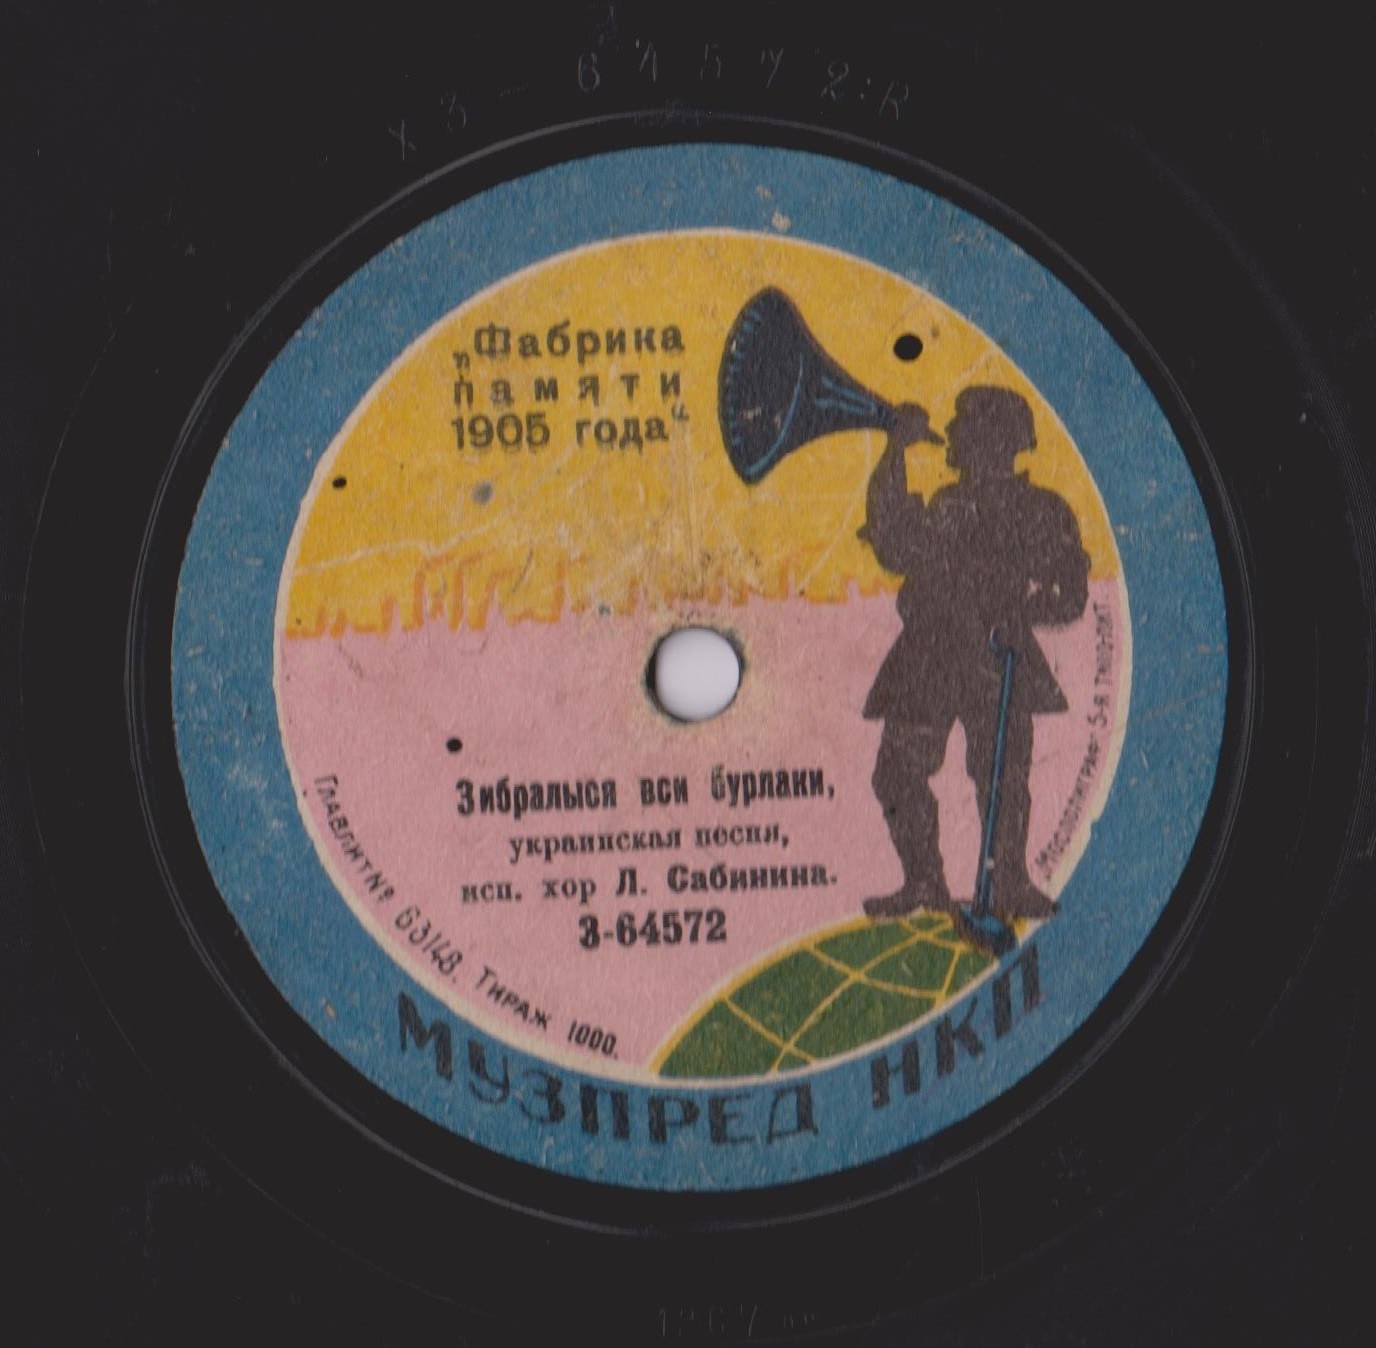 Хор Льва Сабинина - Король танок, украинская песня // Зибралыся вси бурлаки, украинская песня